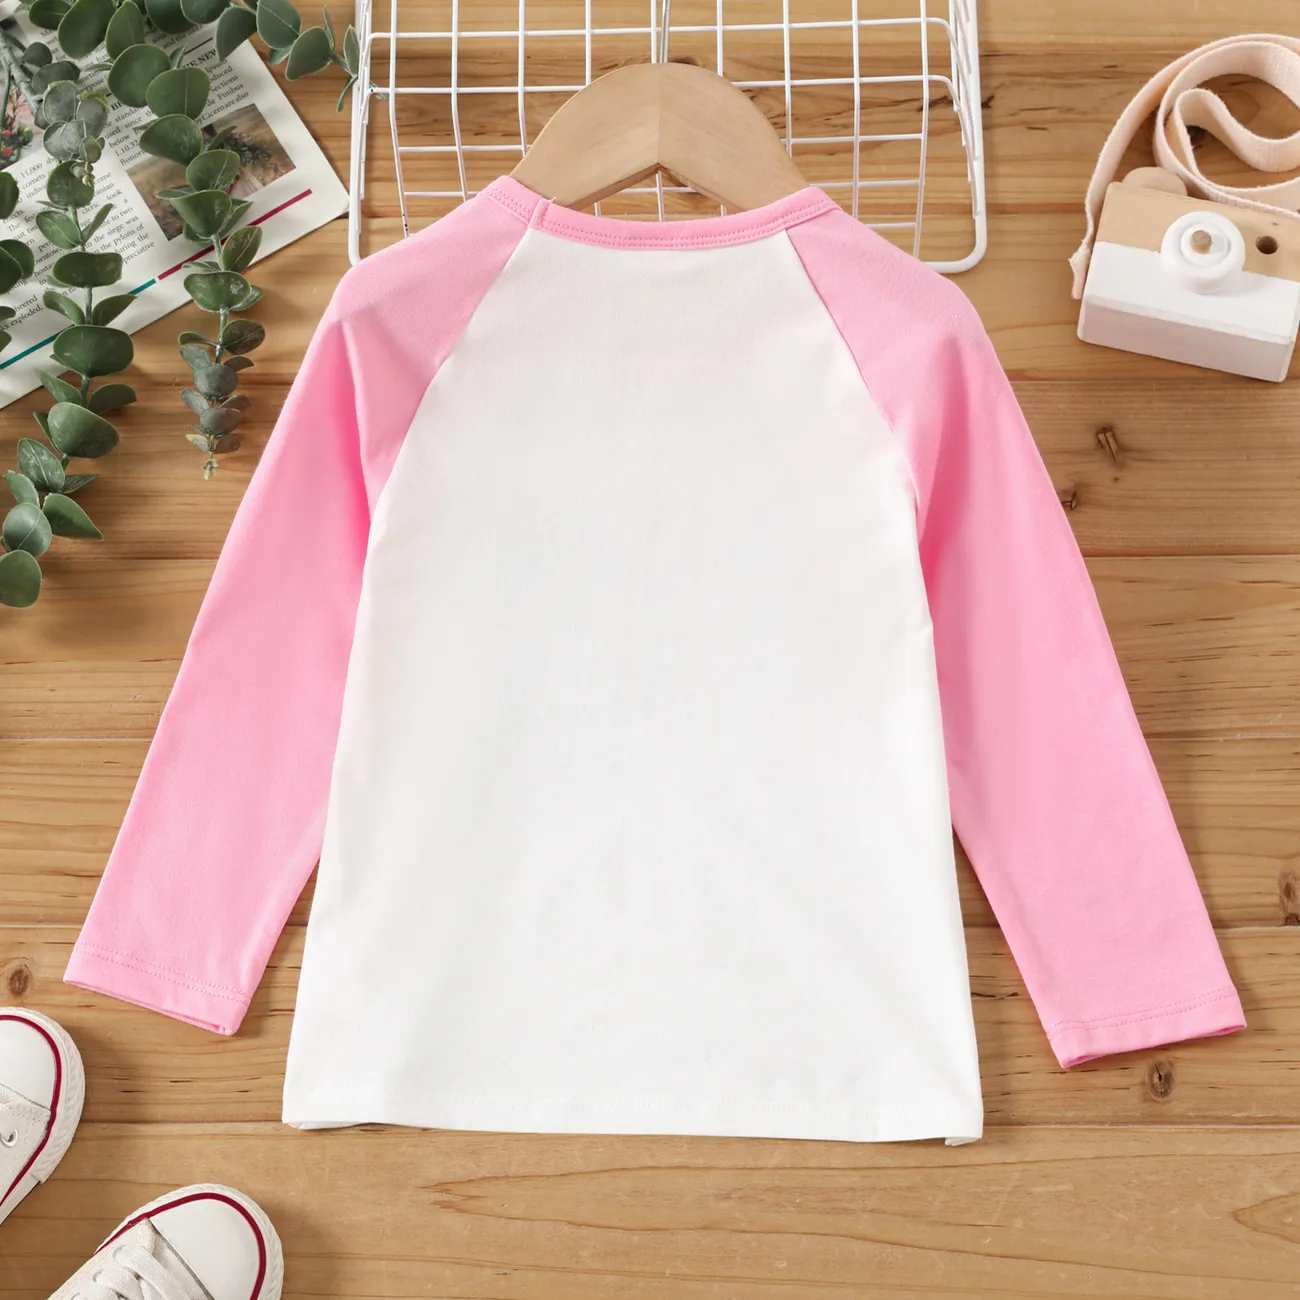 Enfant en bas âge Unisexe Couture de tissus Basique Manches longues T-Shirt roséblanc big image 1